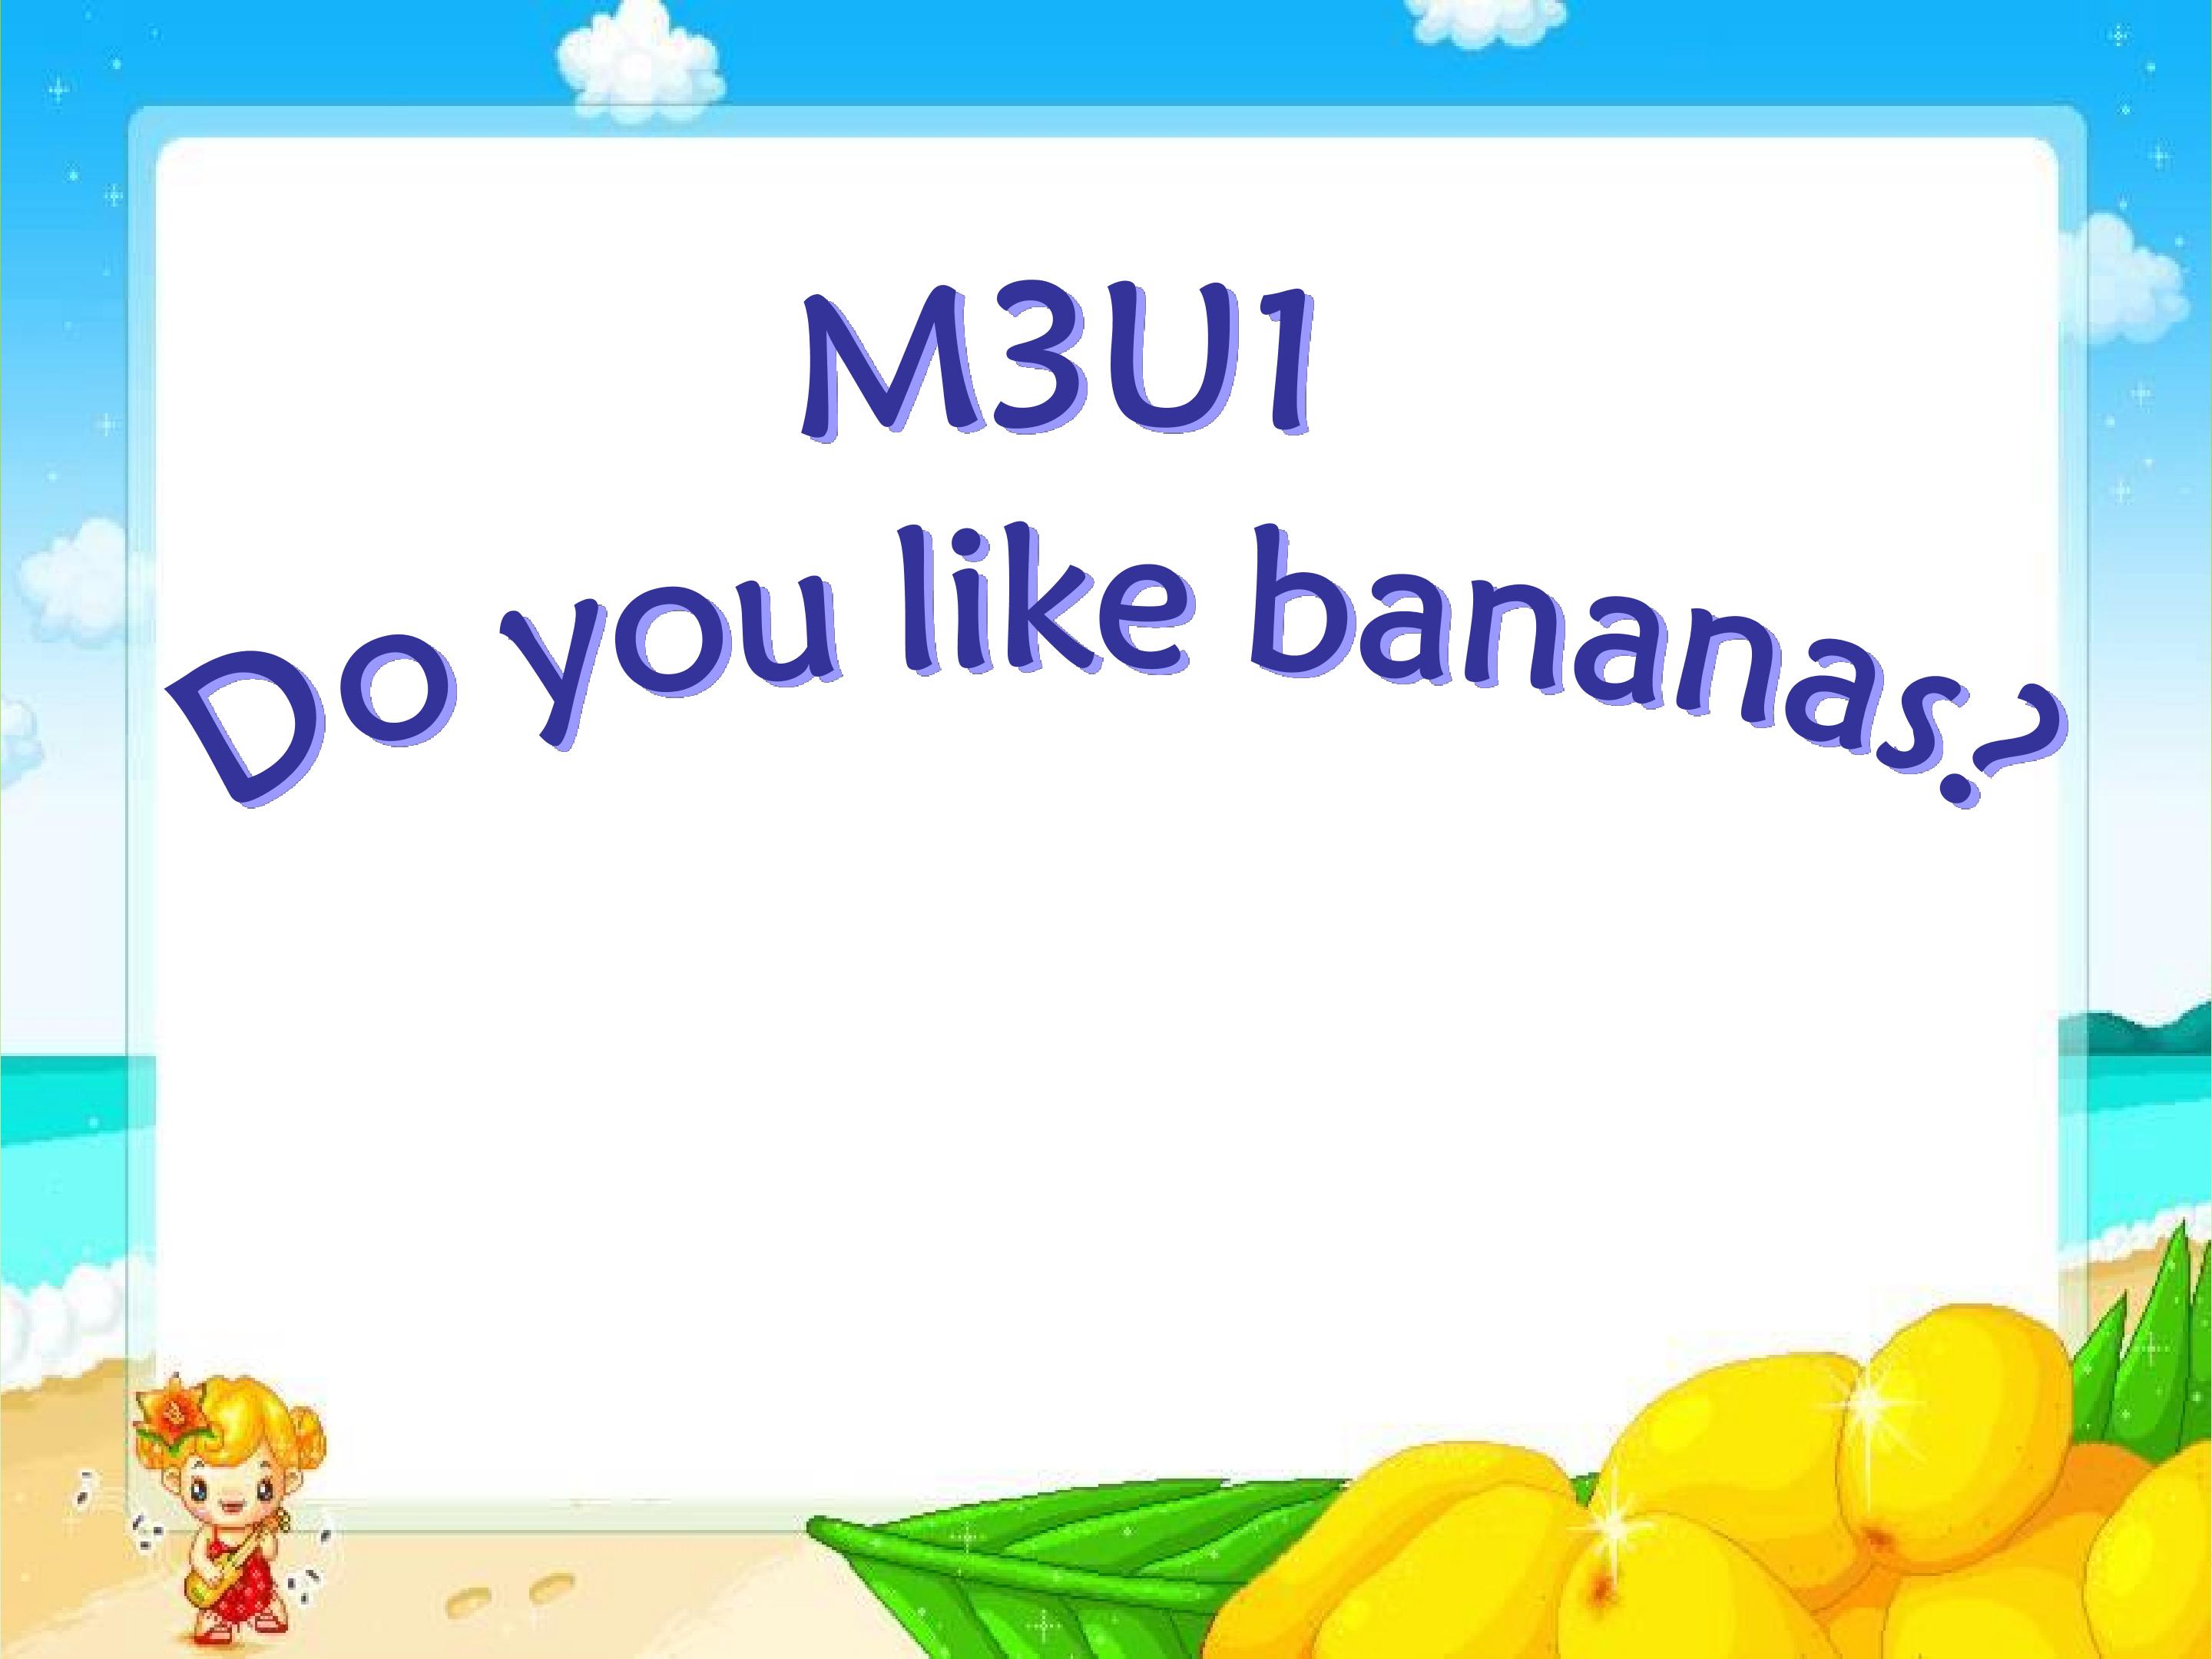 Do  you  like bananas?